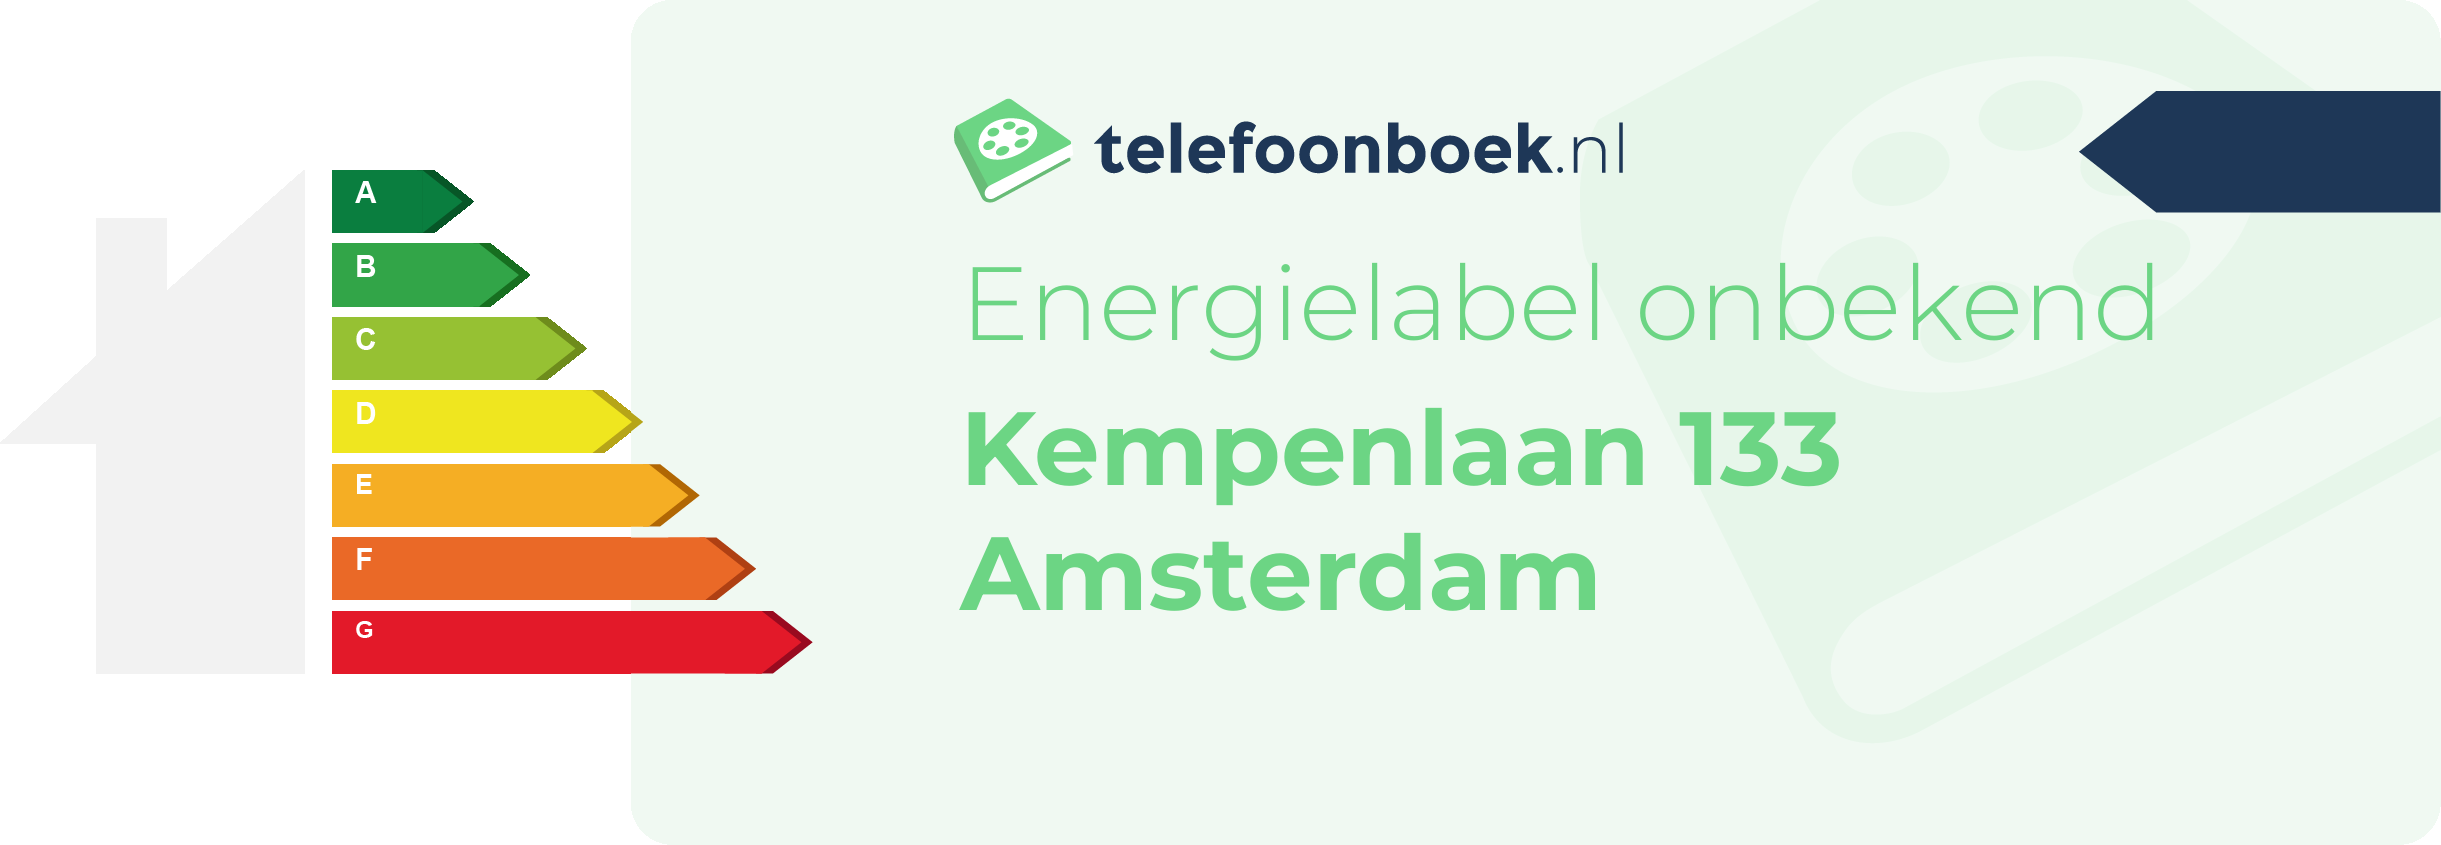 Energielabel Kempenlaan 133 Amsterdam